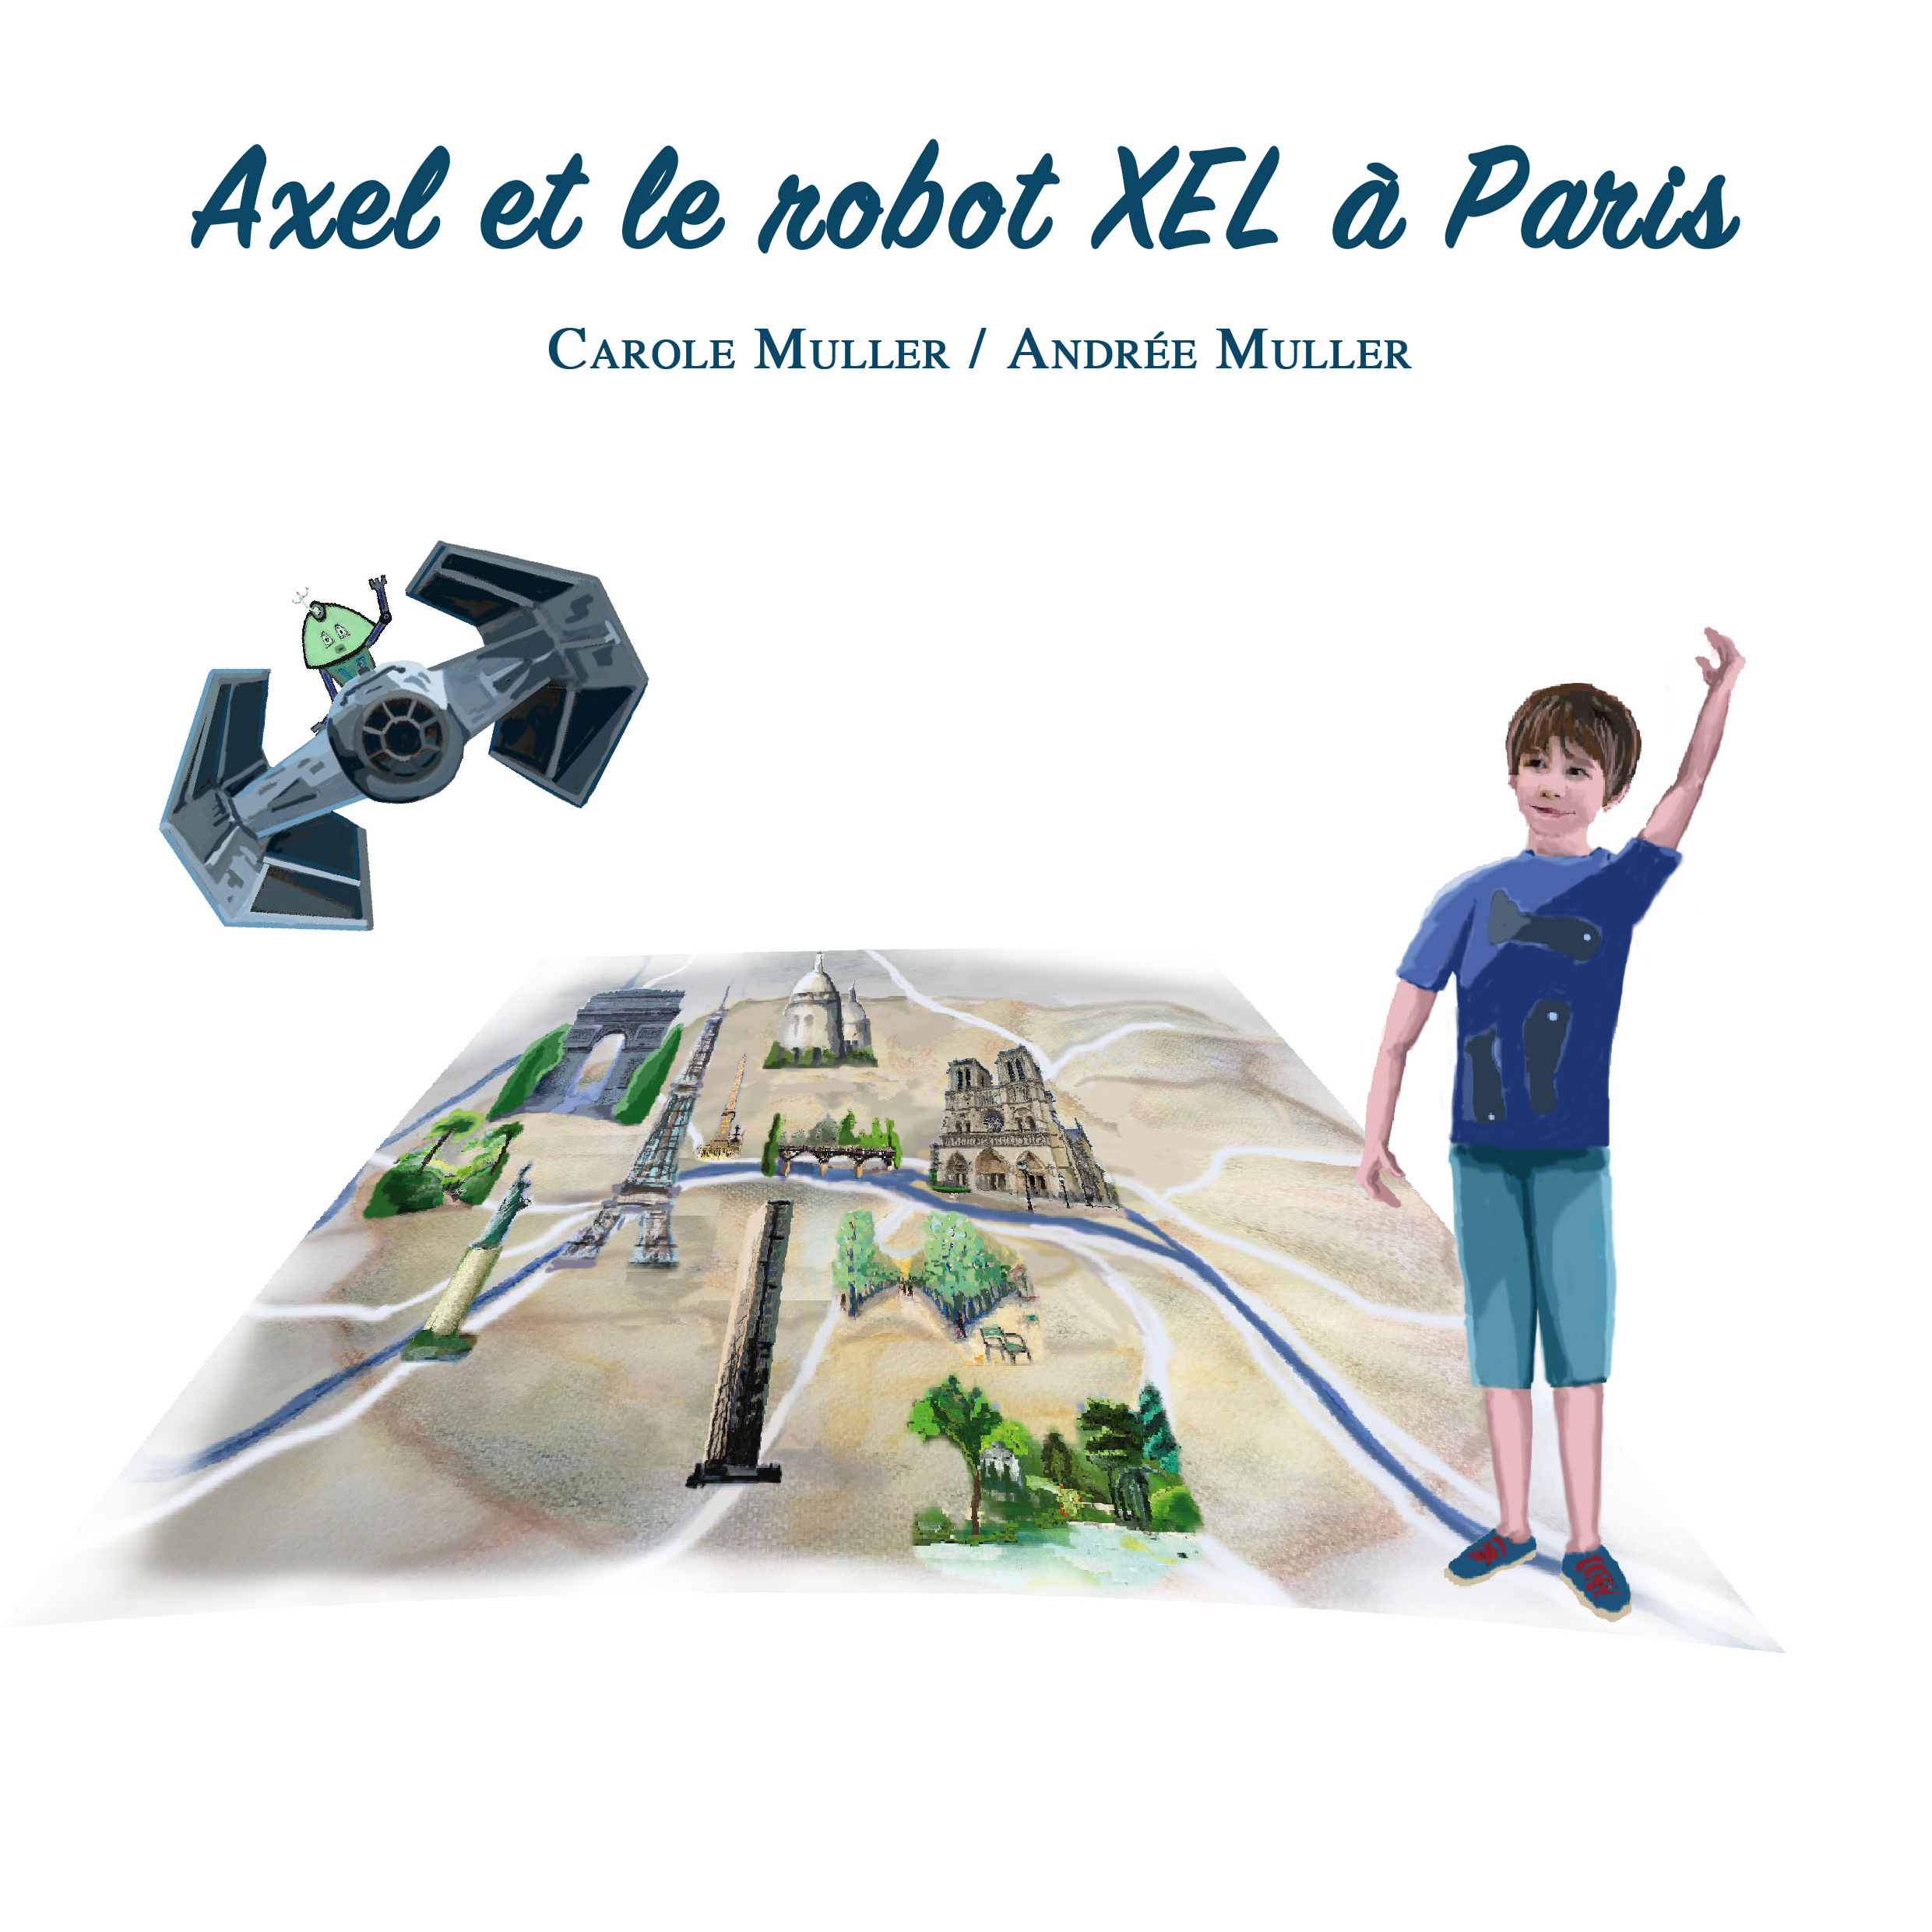 Axel et le robot XEL à Paris